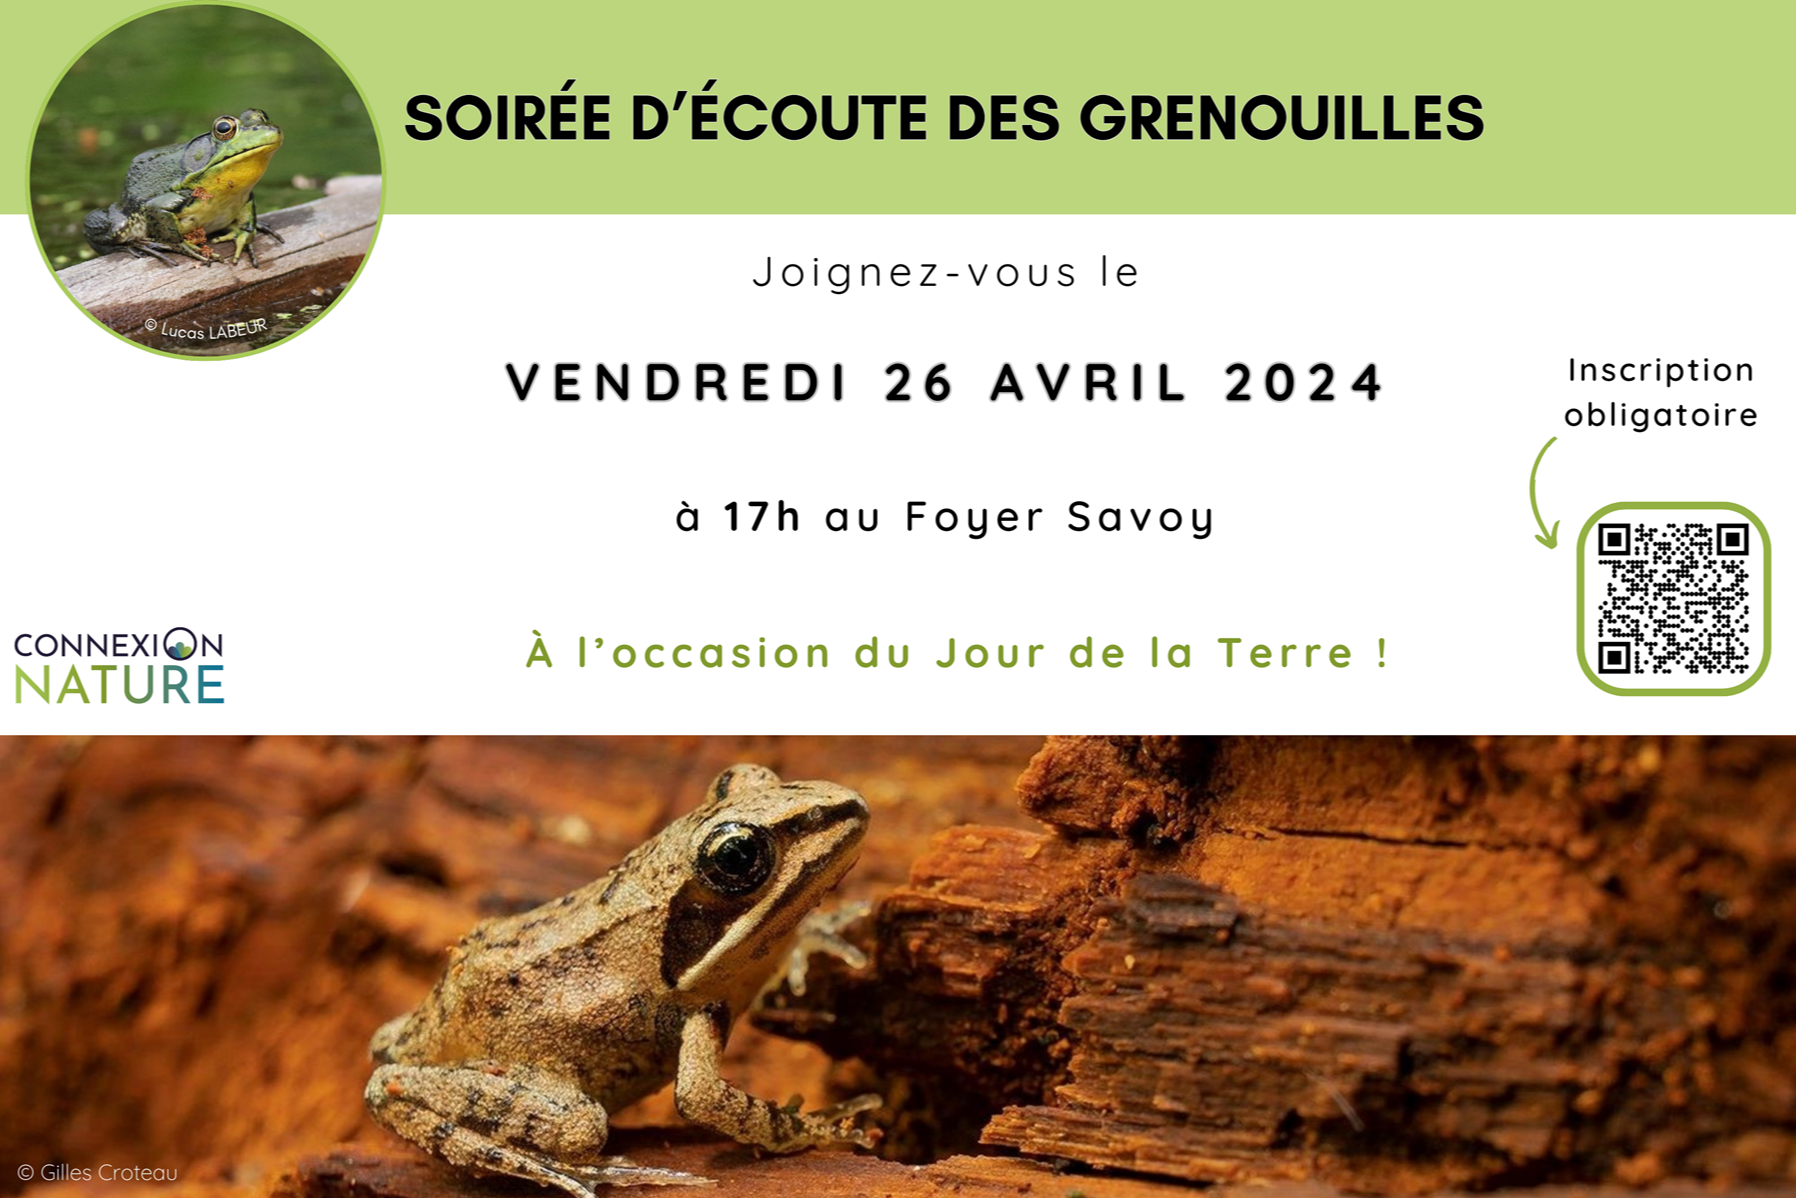 VENDREDI 26 AVRIL 2024 - Soirée d'écoute des grenouilles !